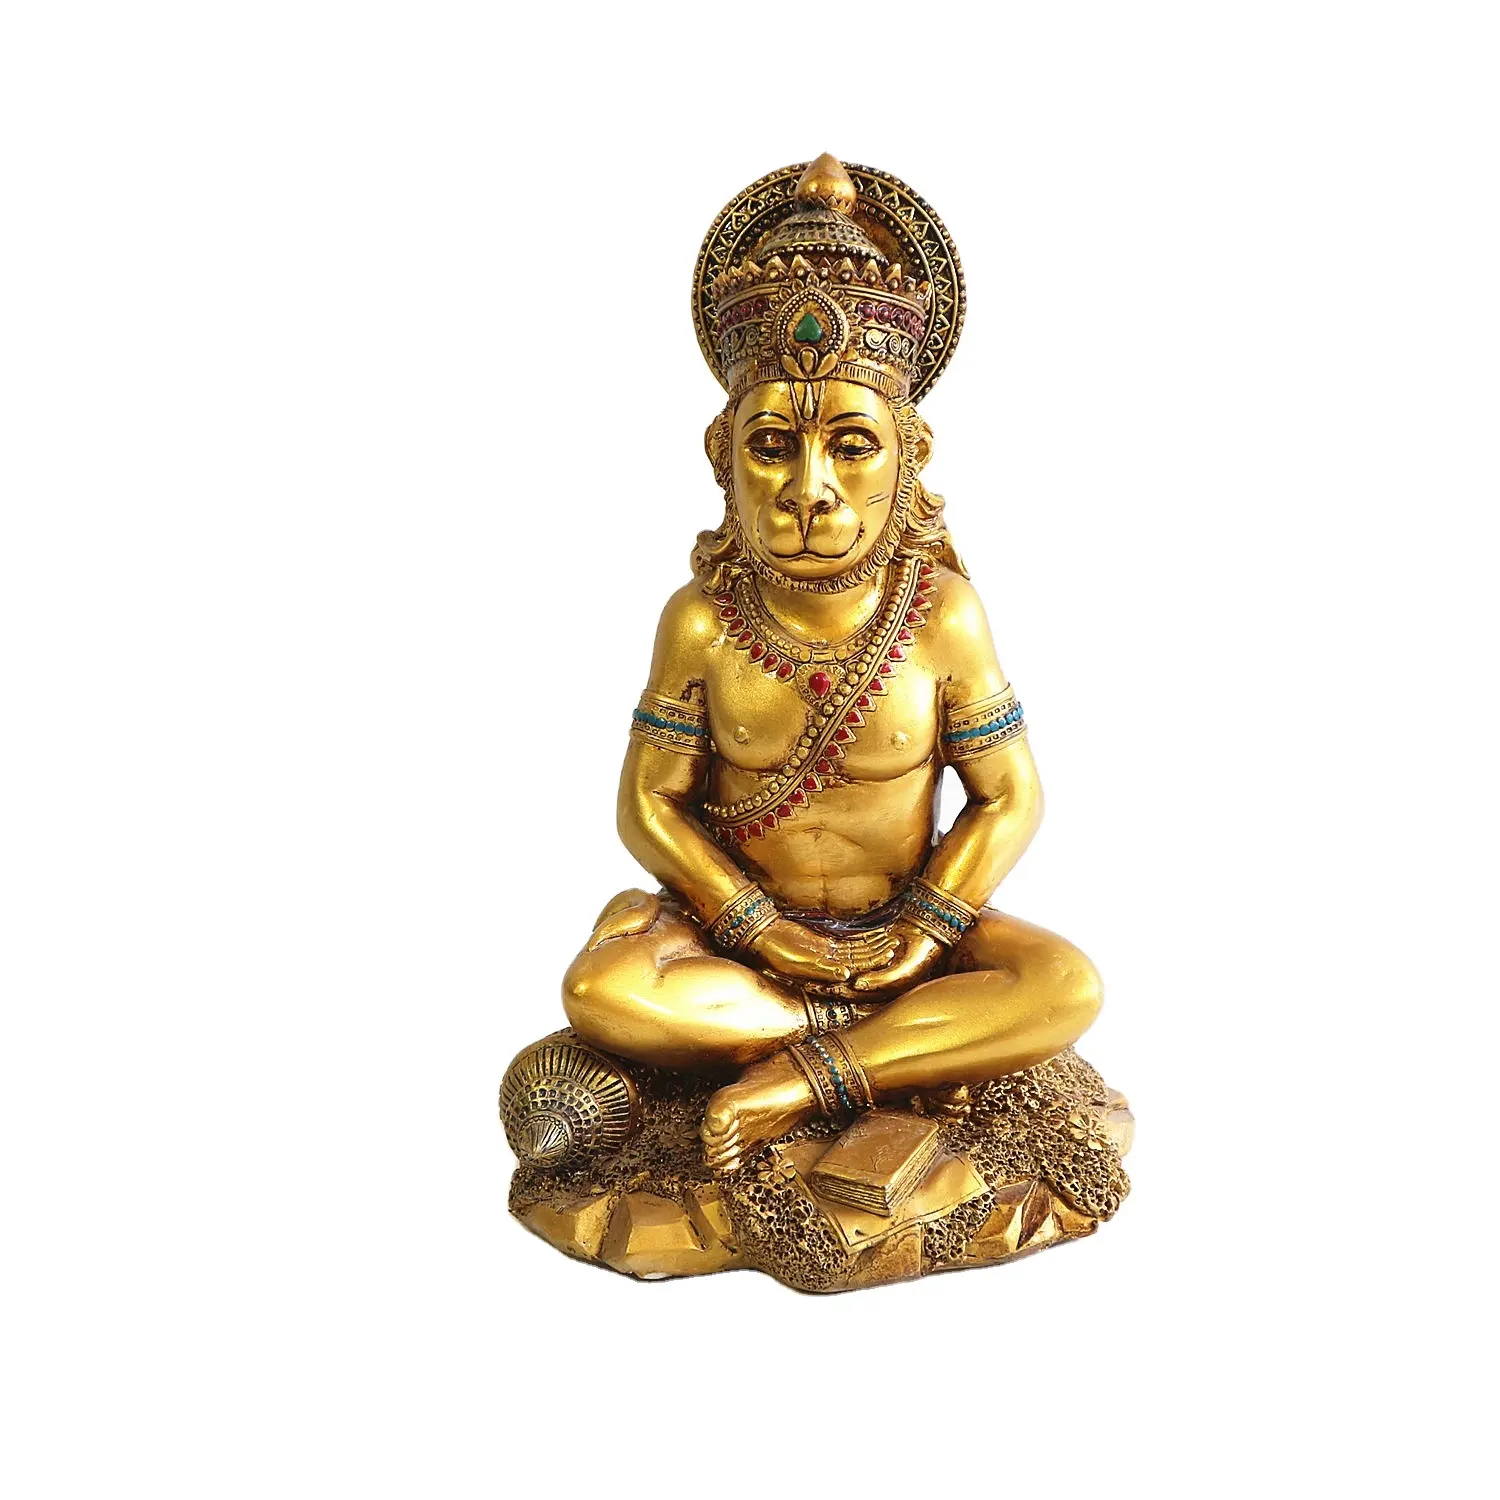 الدينية القديسين وجه القرد الرب هانومان آلهة الهندوس بوذا تمثال